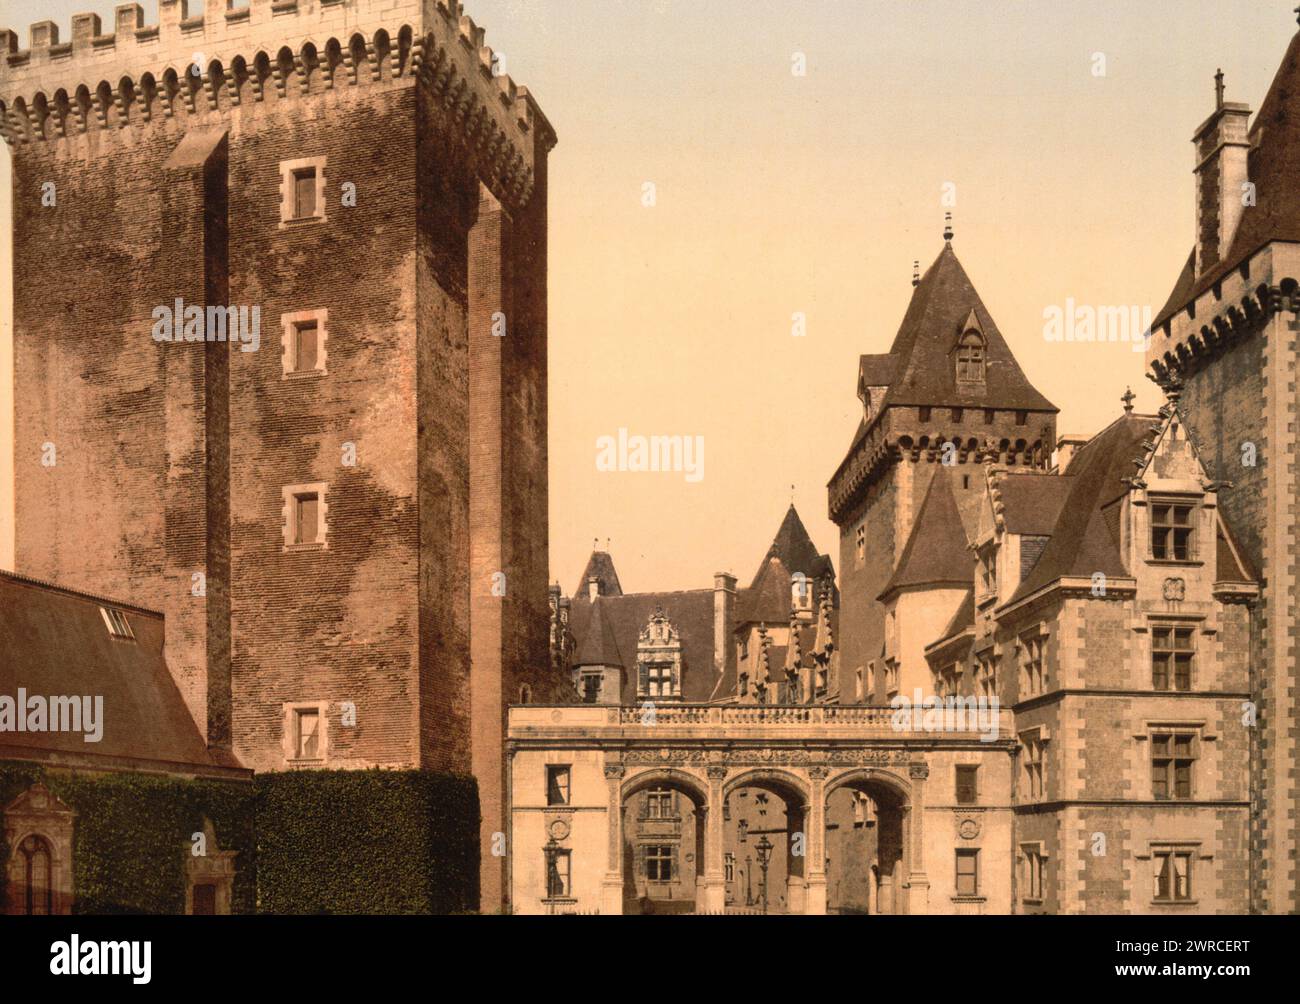 Die Burg von der Ostfront, Pau, Pyrenäen, Frankreich, zwischen ca. 1890 und ca. 1900., Farbe, 1890-1900 Stockfoto